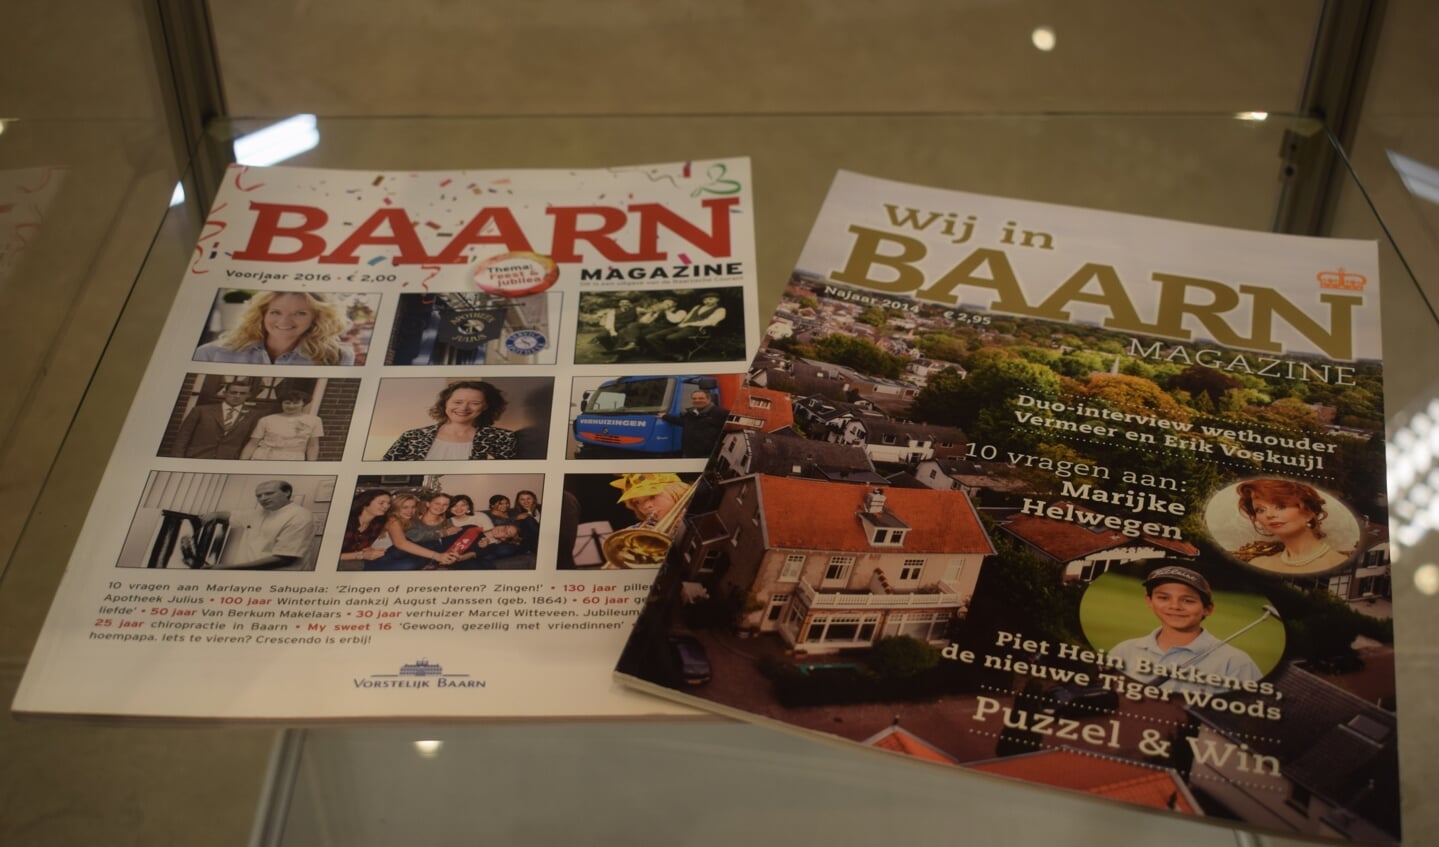 Baarn Magazine werd uitgegeven door Bakker Baarn.